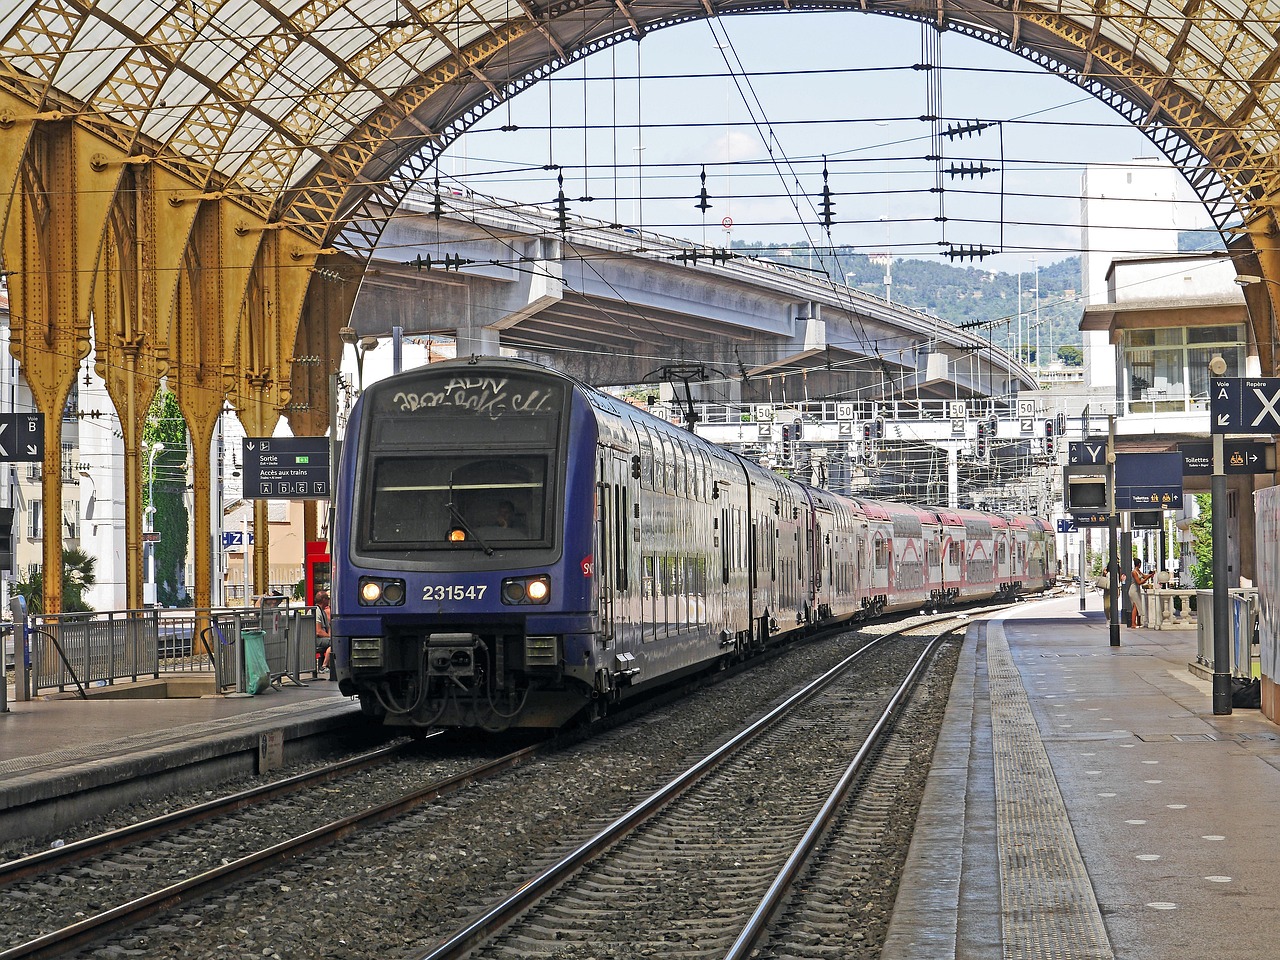 Huit régions portent plainte contre la SNCF